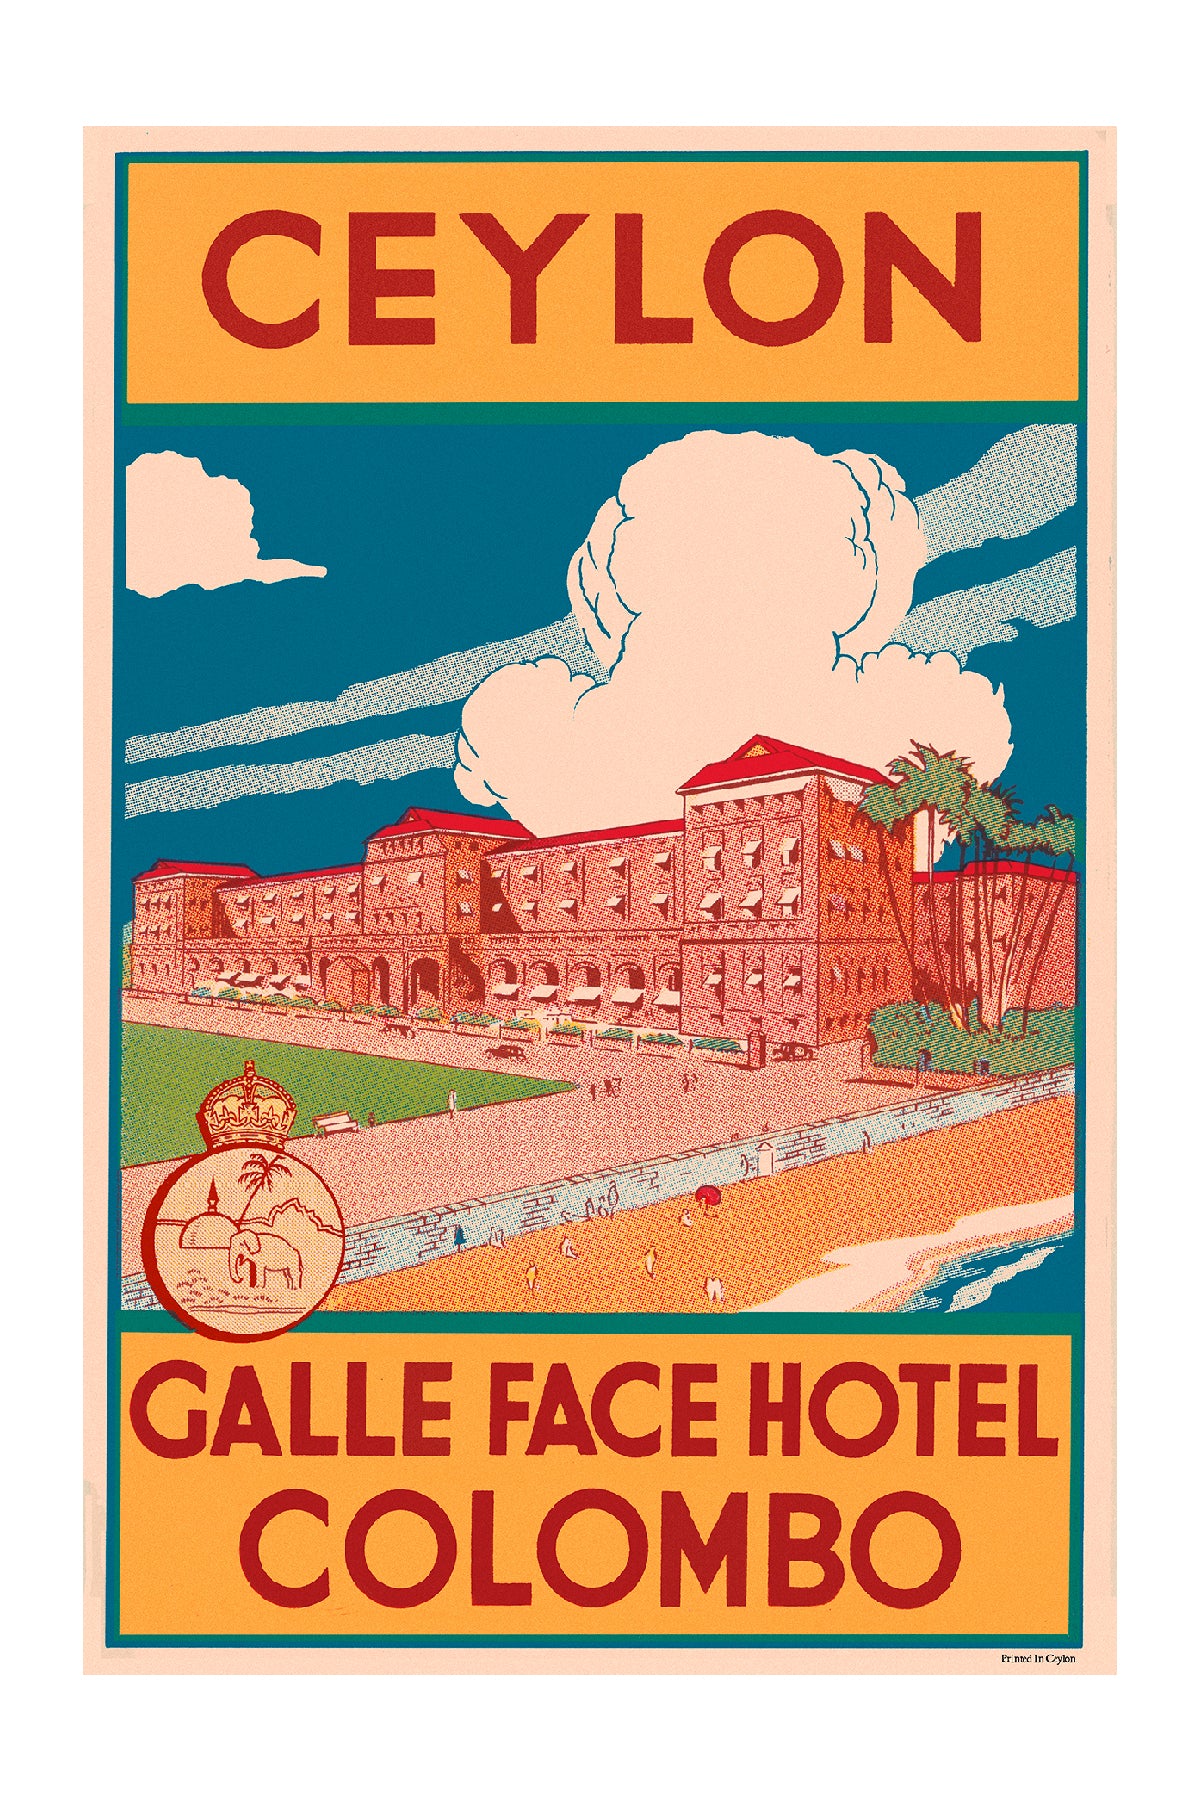 Galle Face Hotel, Colombo, Ceylon, Sri Lanka.